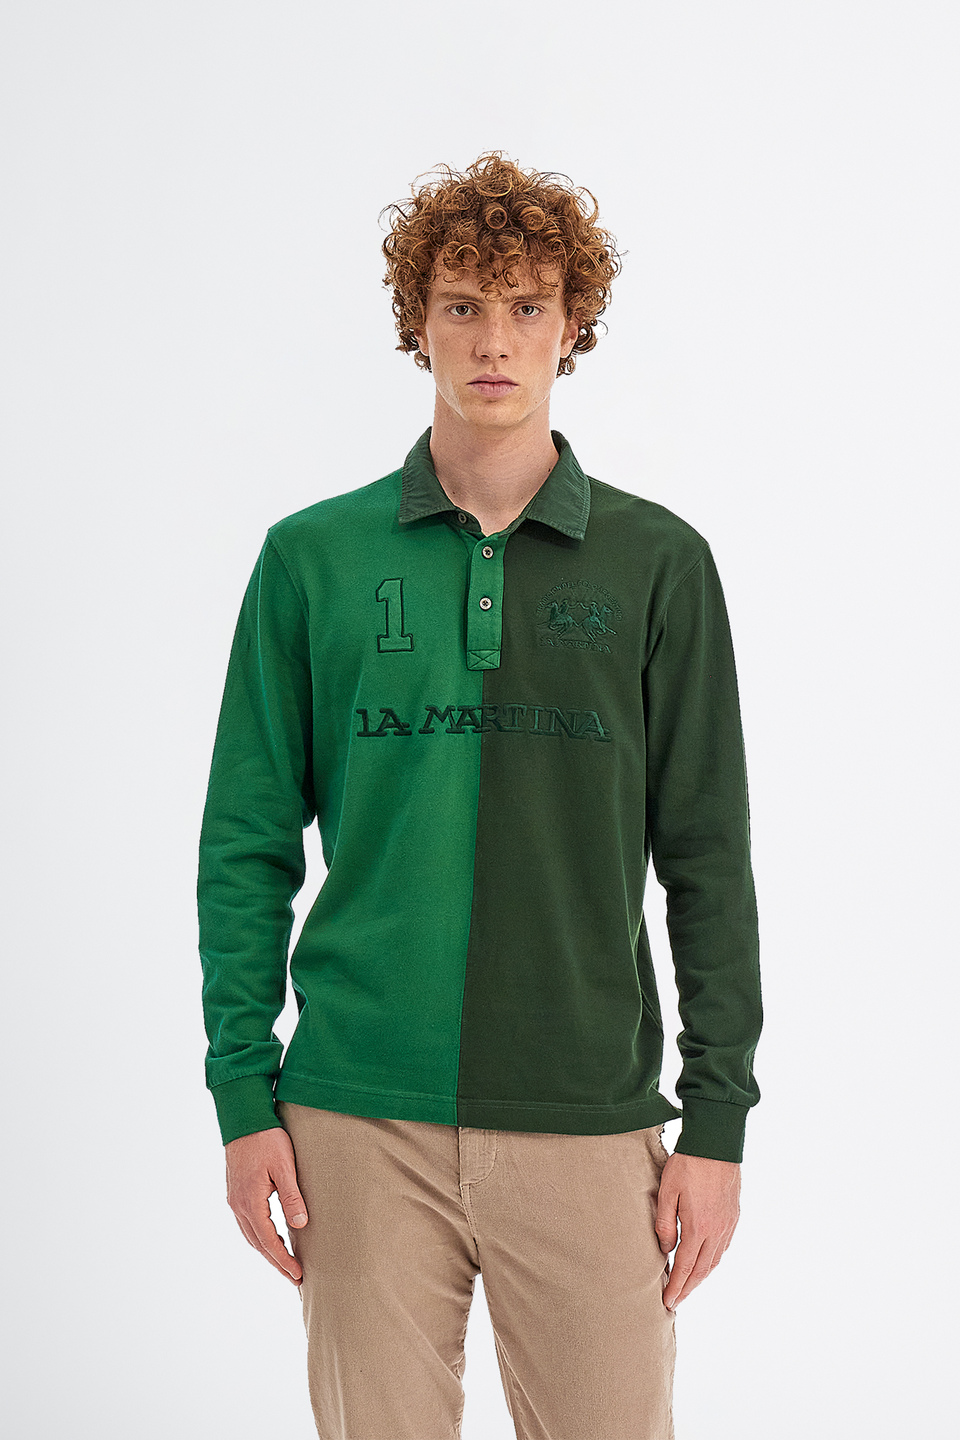 Herren-Poloshirt aus Baumwolle mit langen Ärmeln | La Martina - Official Online Shop